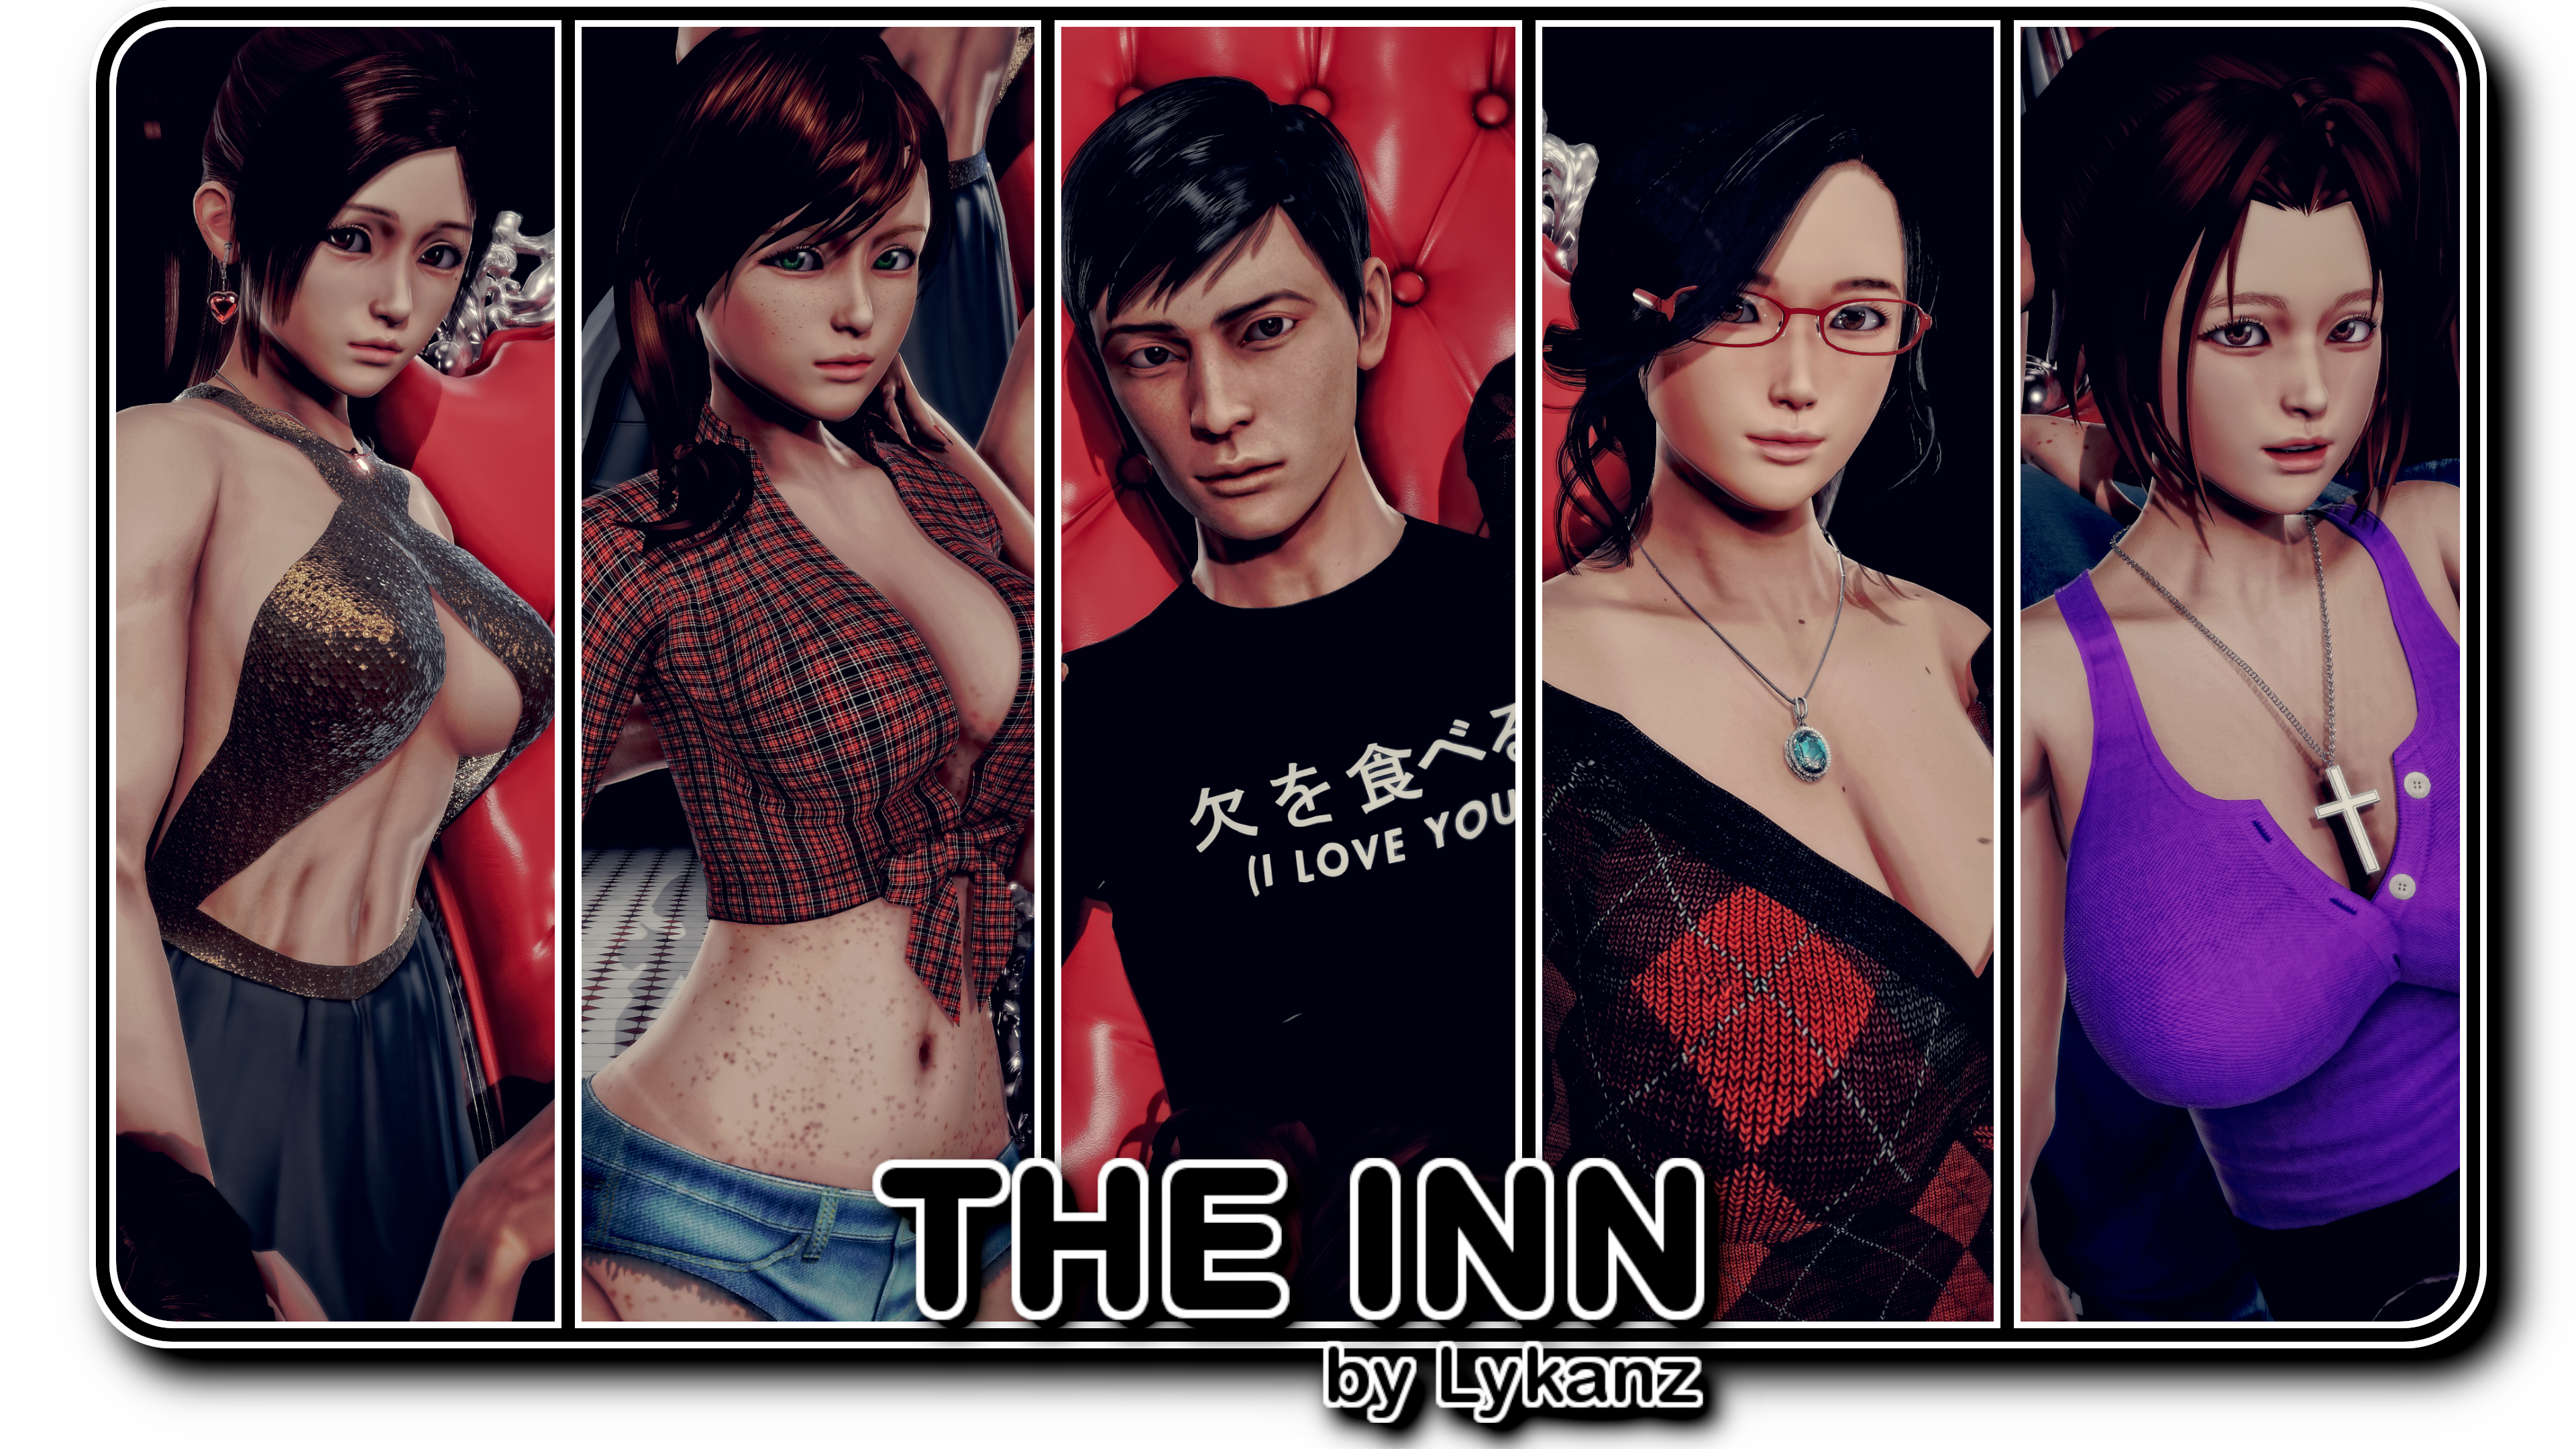 The Inn (v0.07.04)